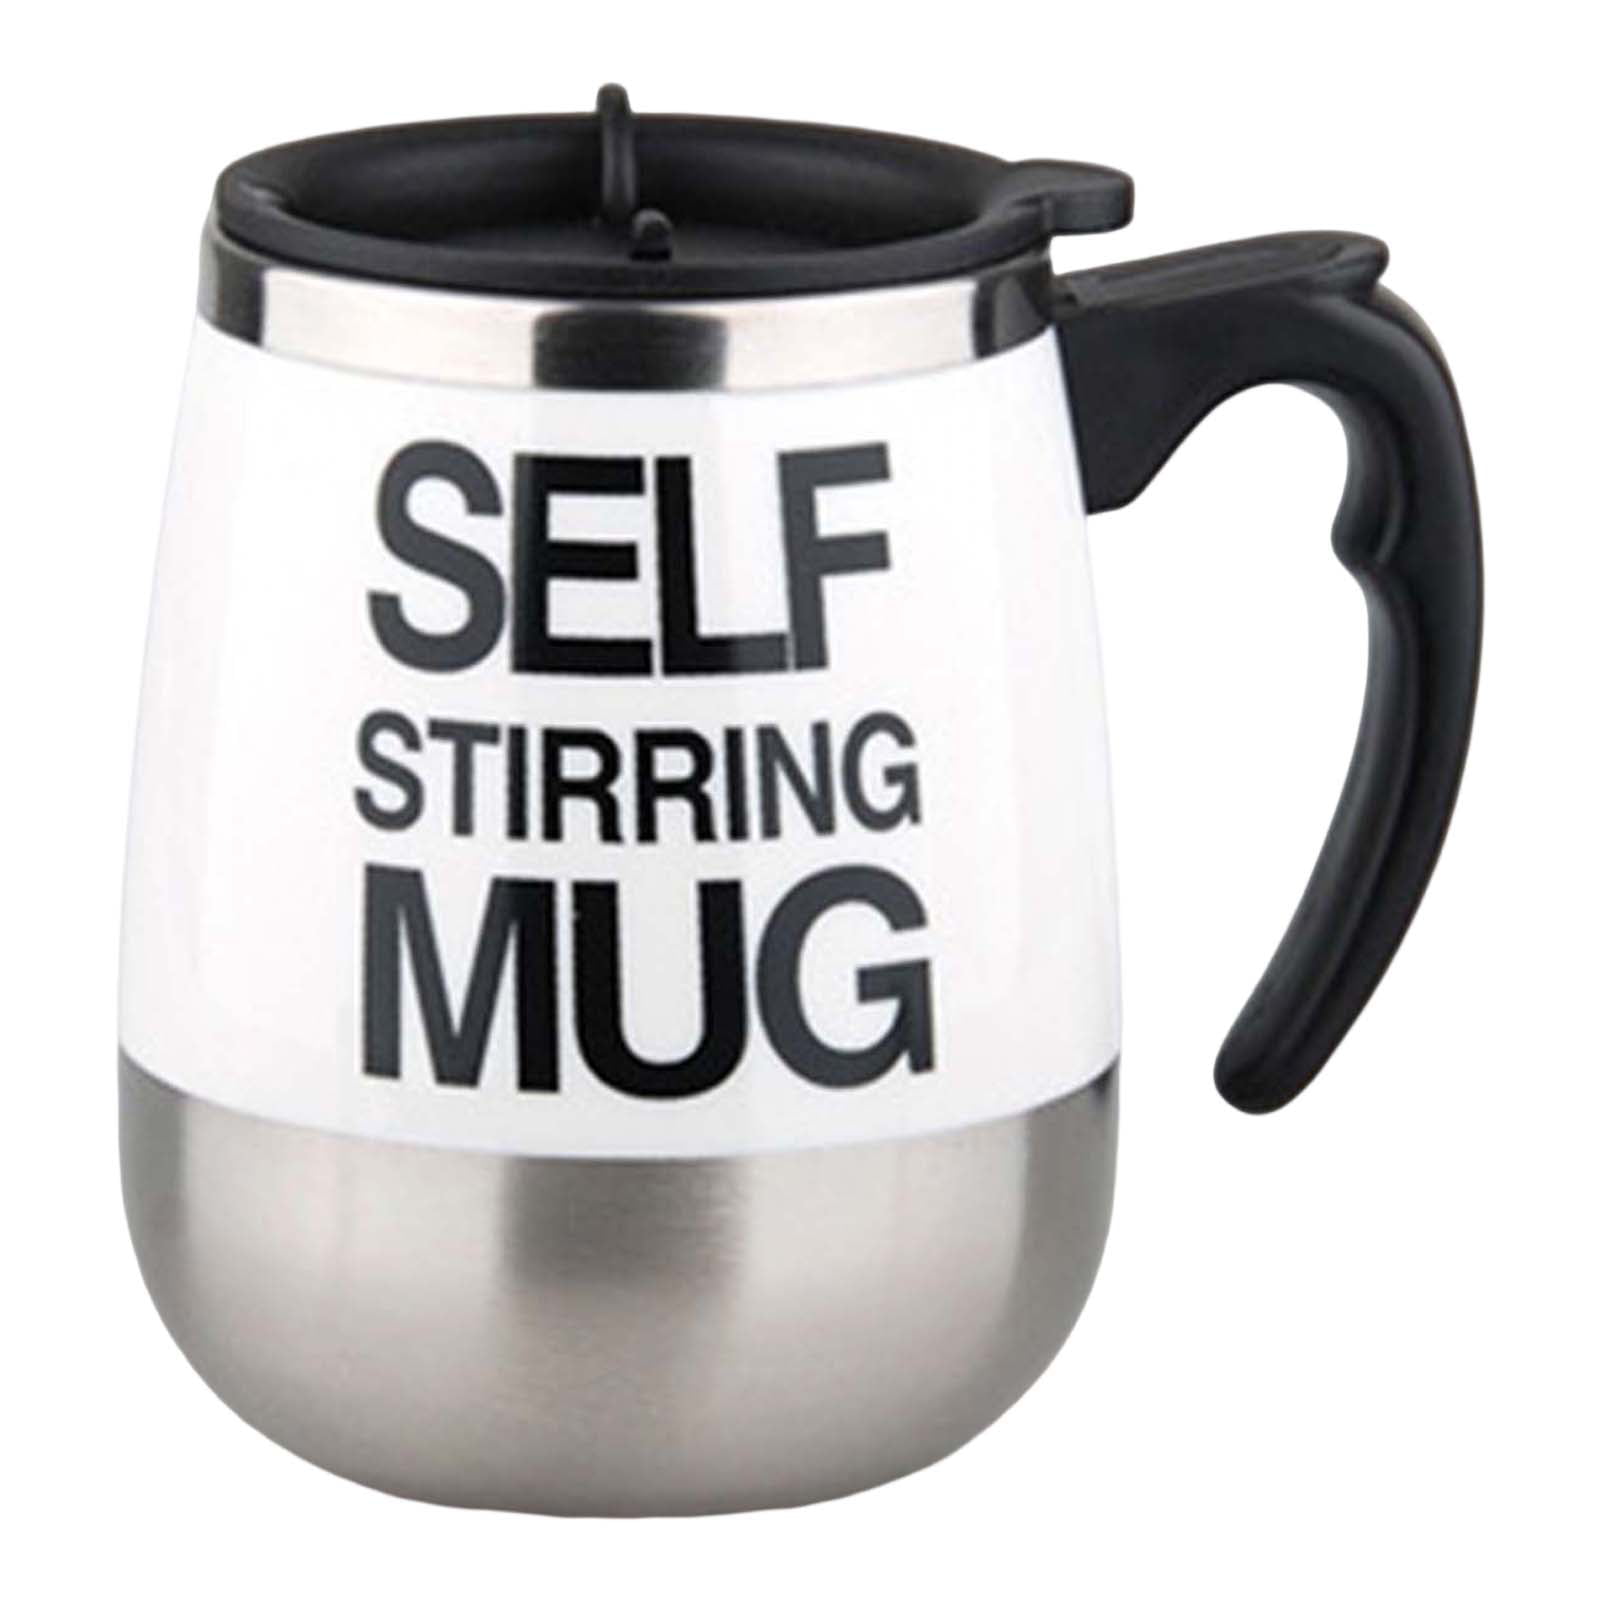 Self Stirring Mug – LIGHTBULB BUSINESS